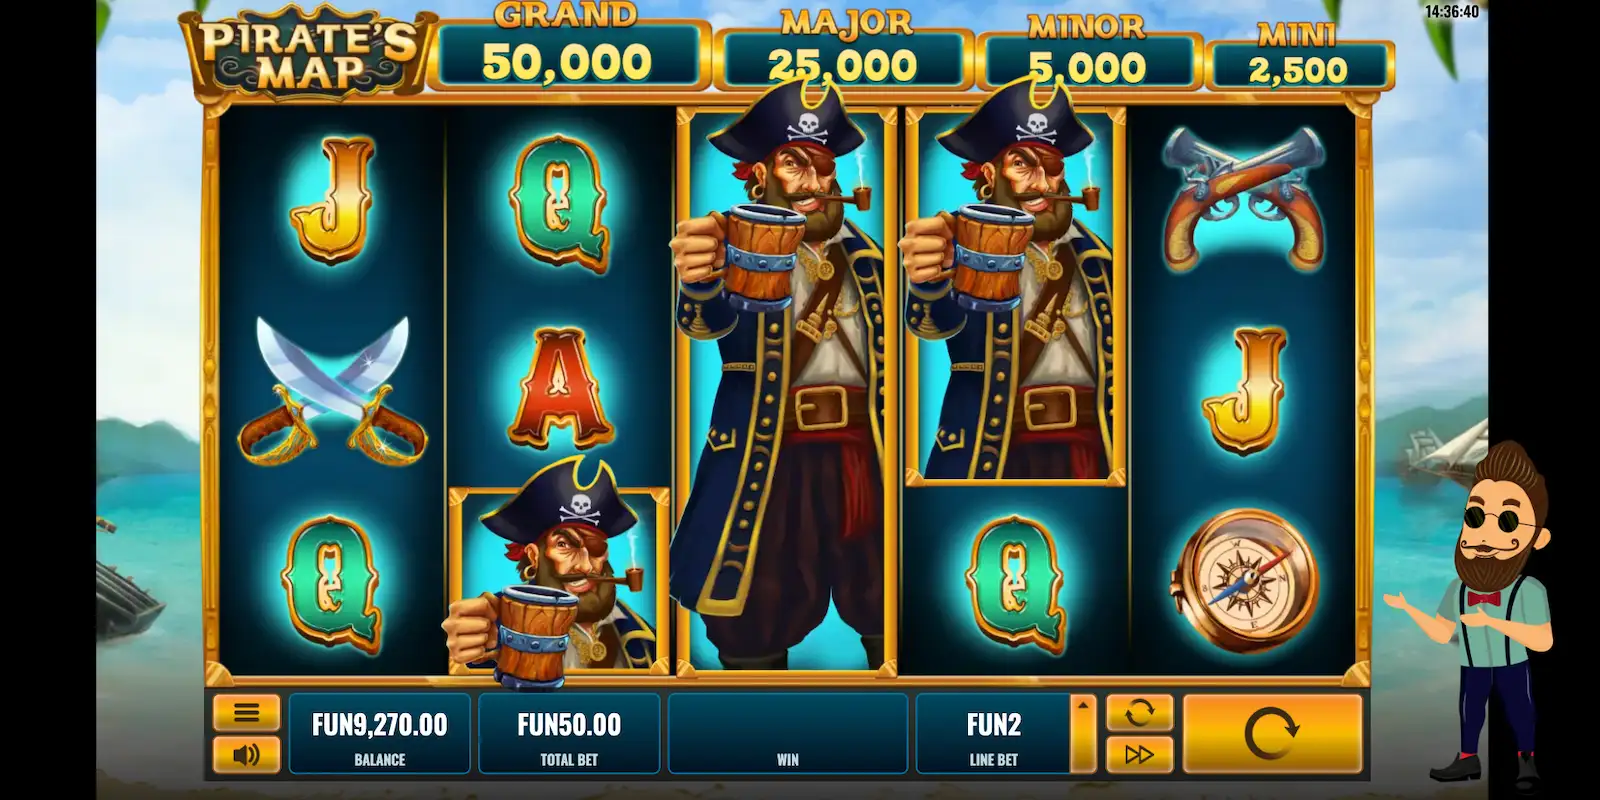 Pirates Map Slot Bonuses